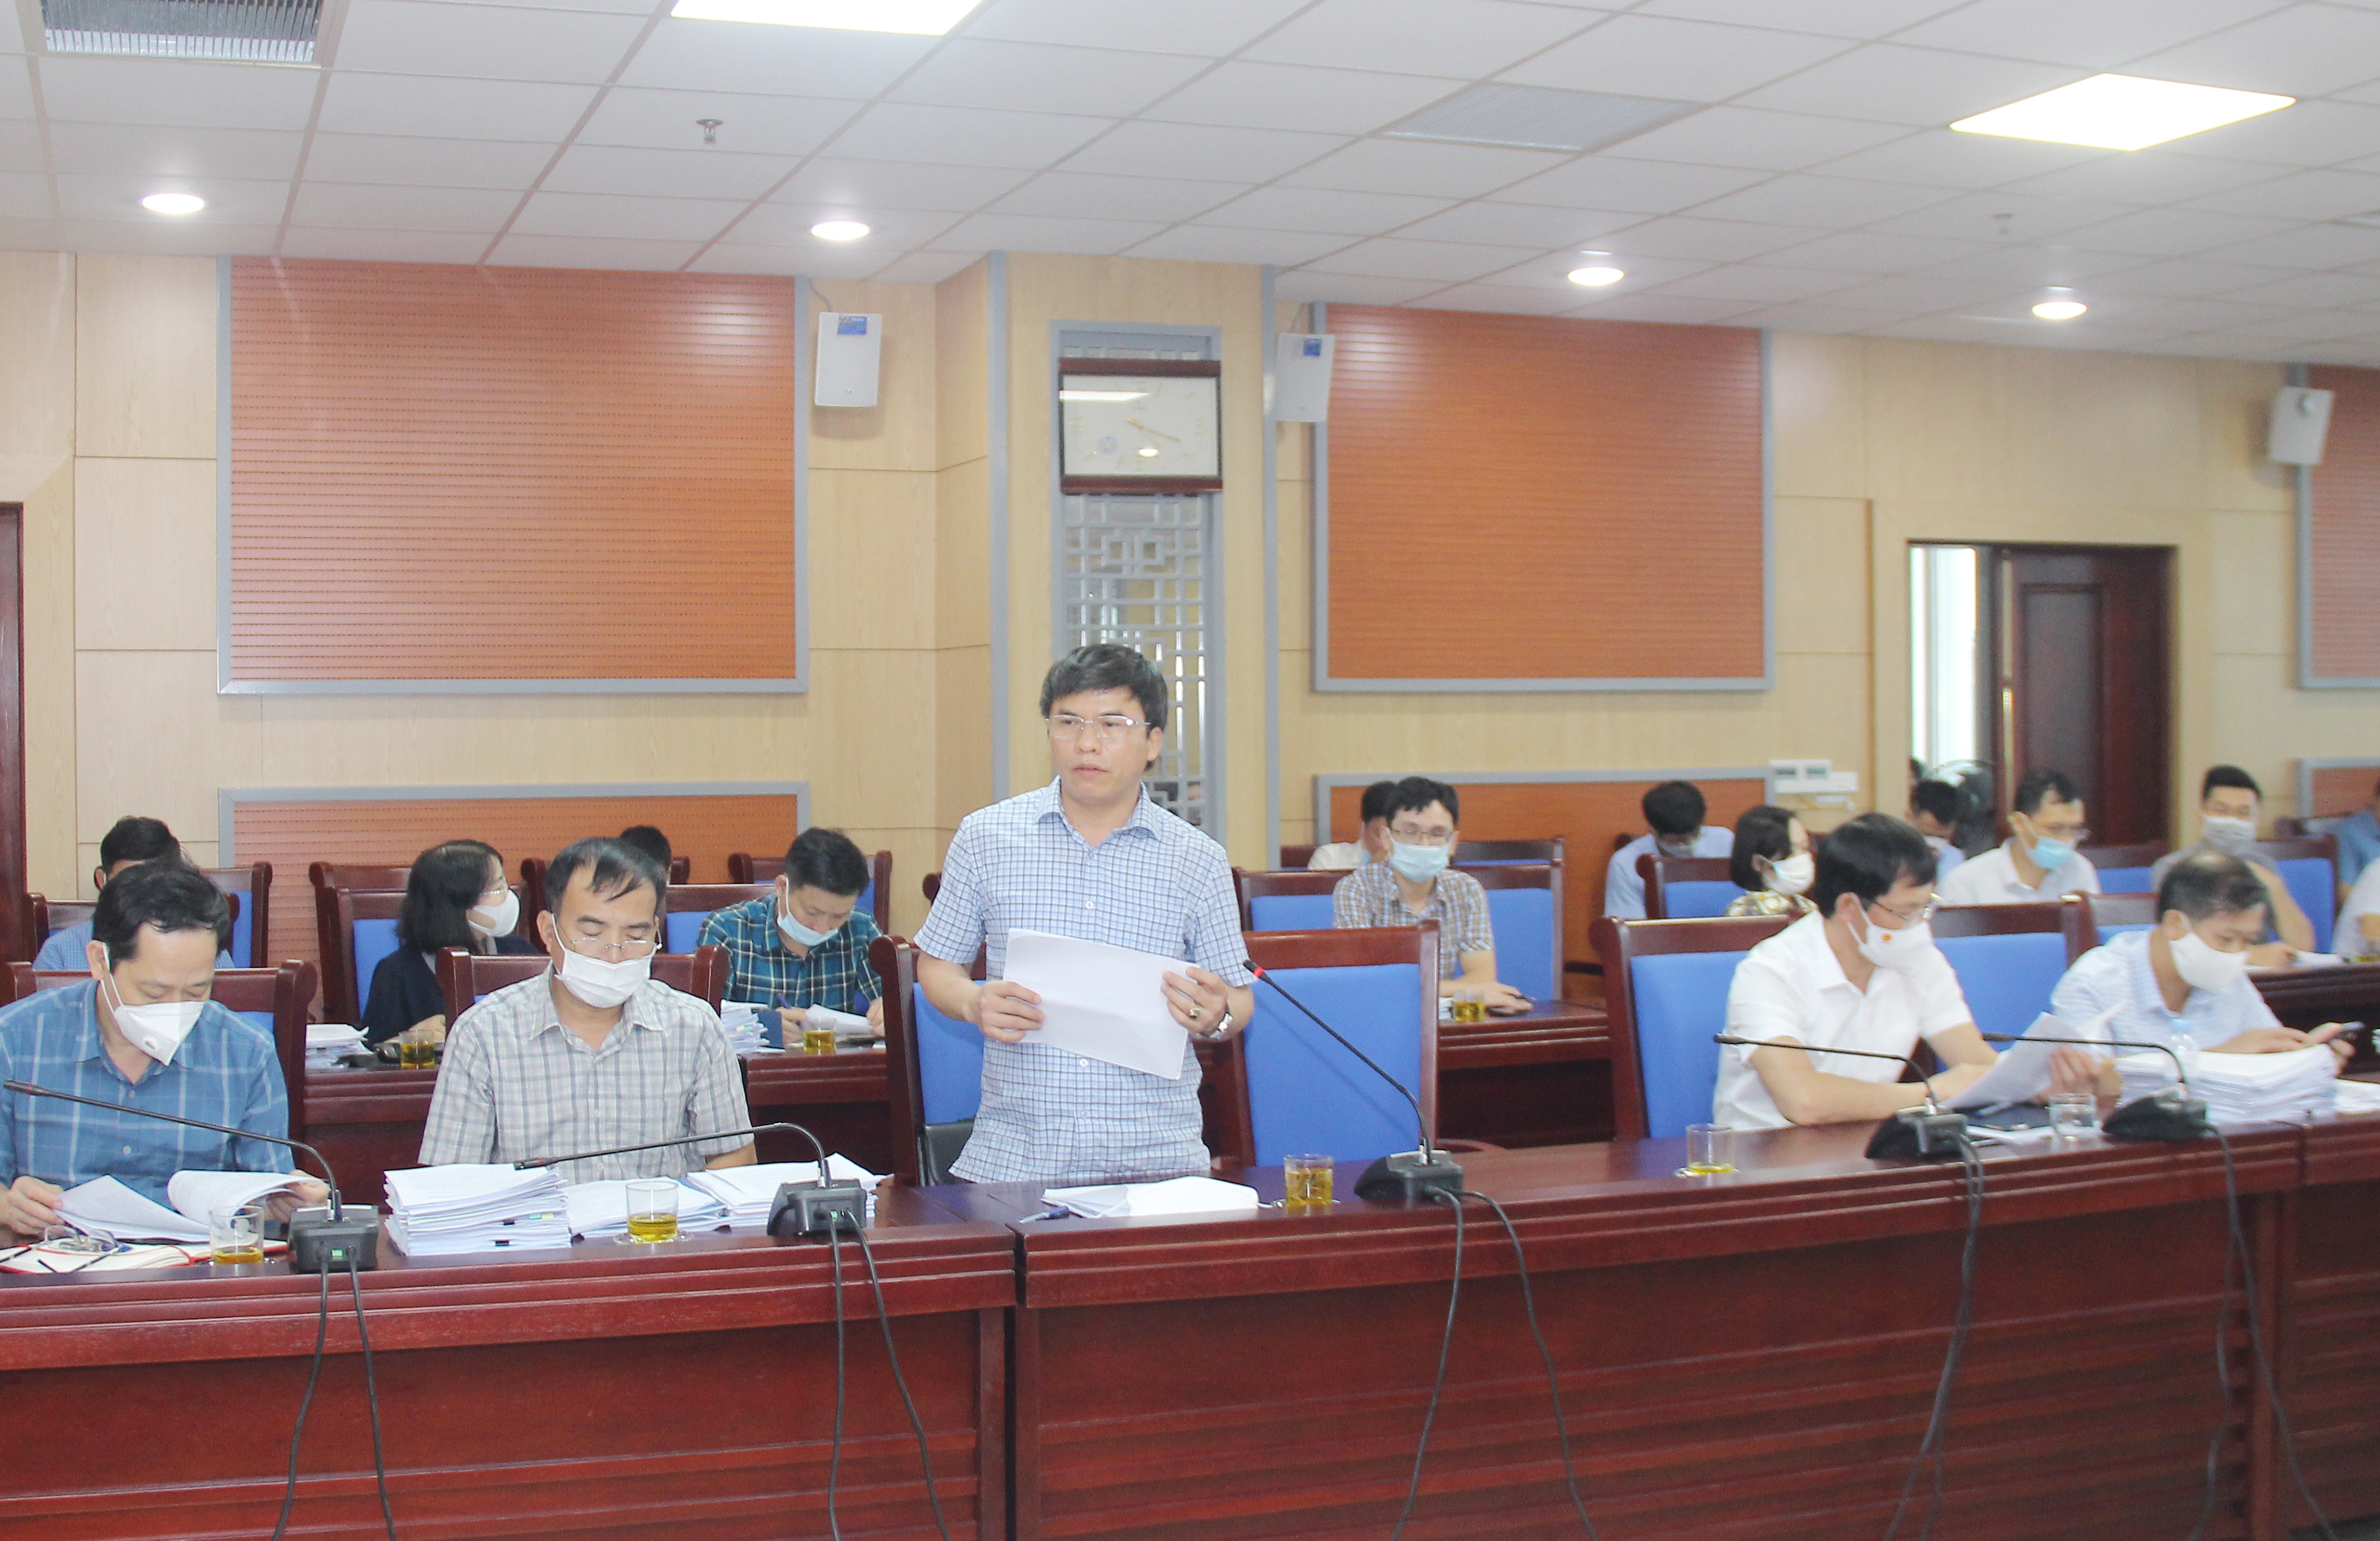 Phó Giám đốc Sở Kế hoạch và Đầu tư Phan Văn Hoan giải trình một số vấn đề mà các thành viên dự họp nêu liên quan đến